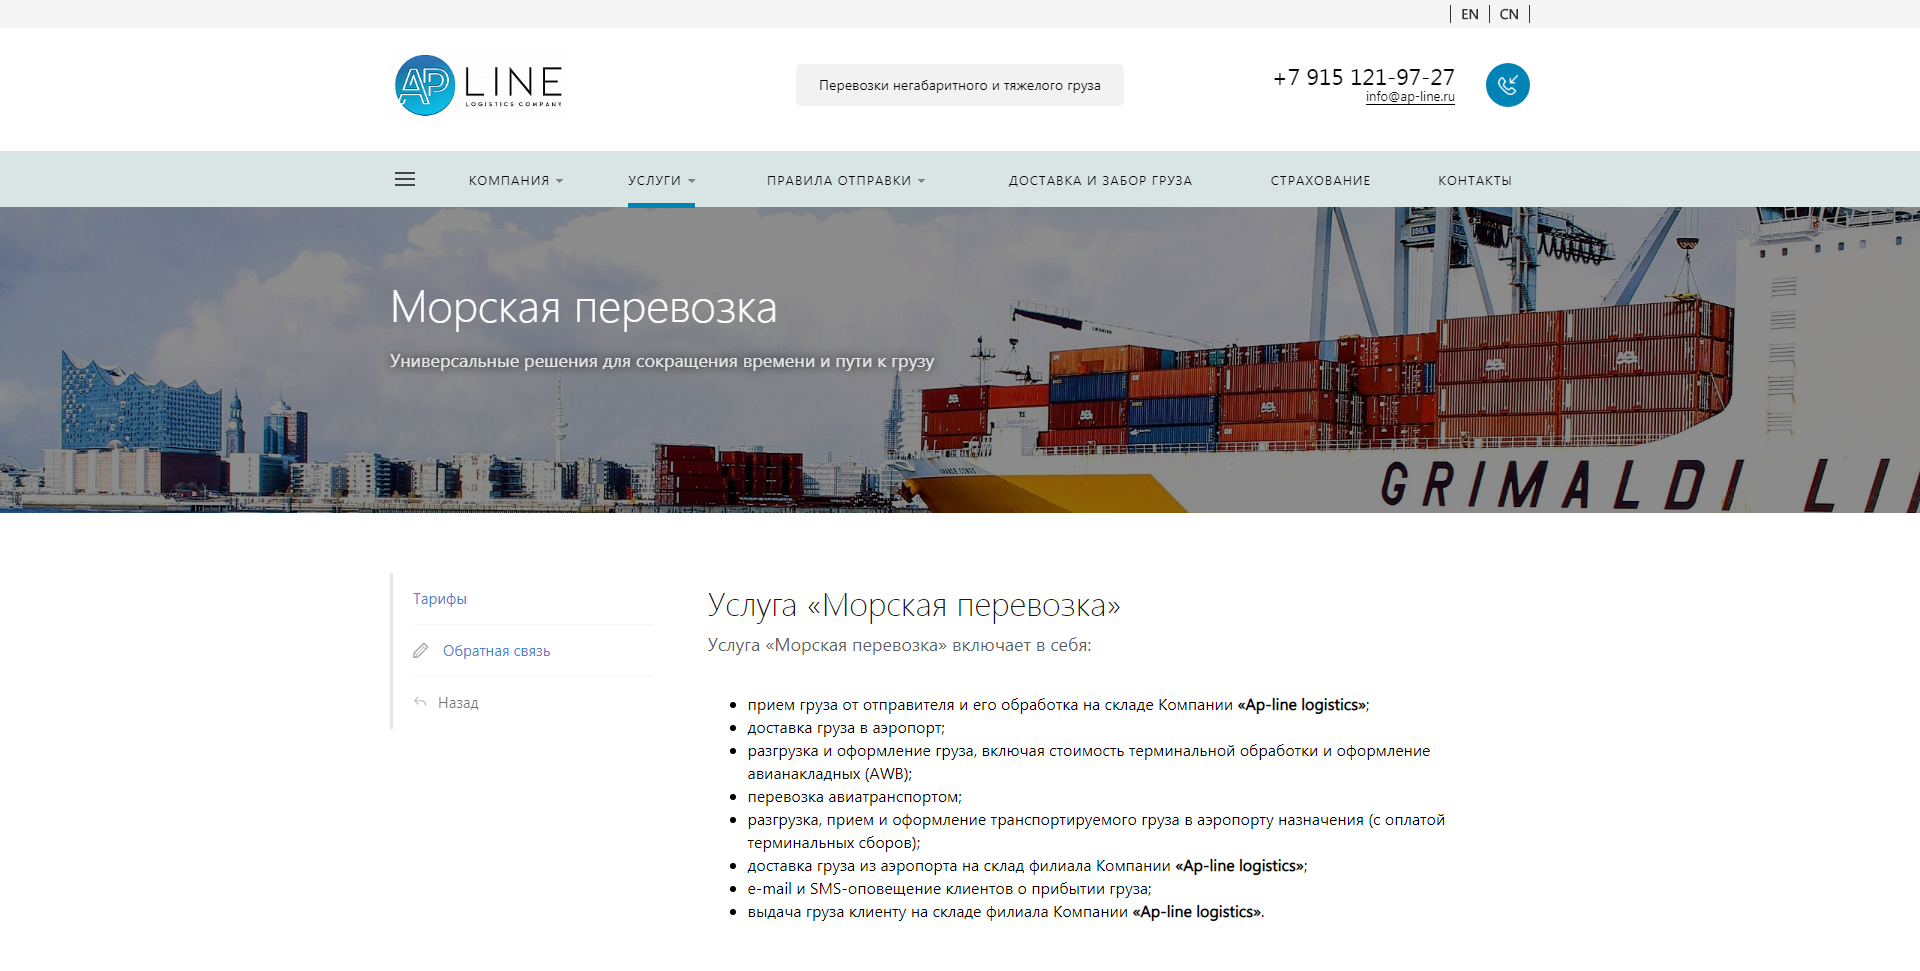 трехъязычный сайт логистической компании "ap-line logistics".